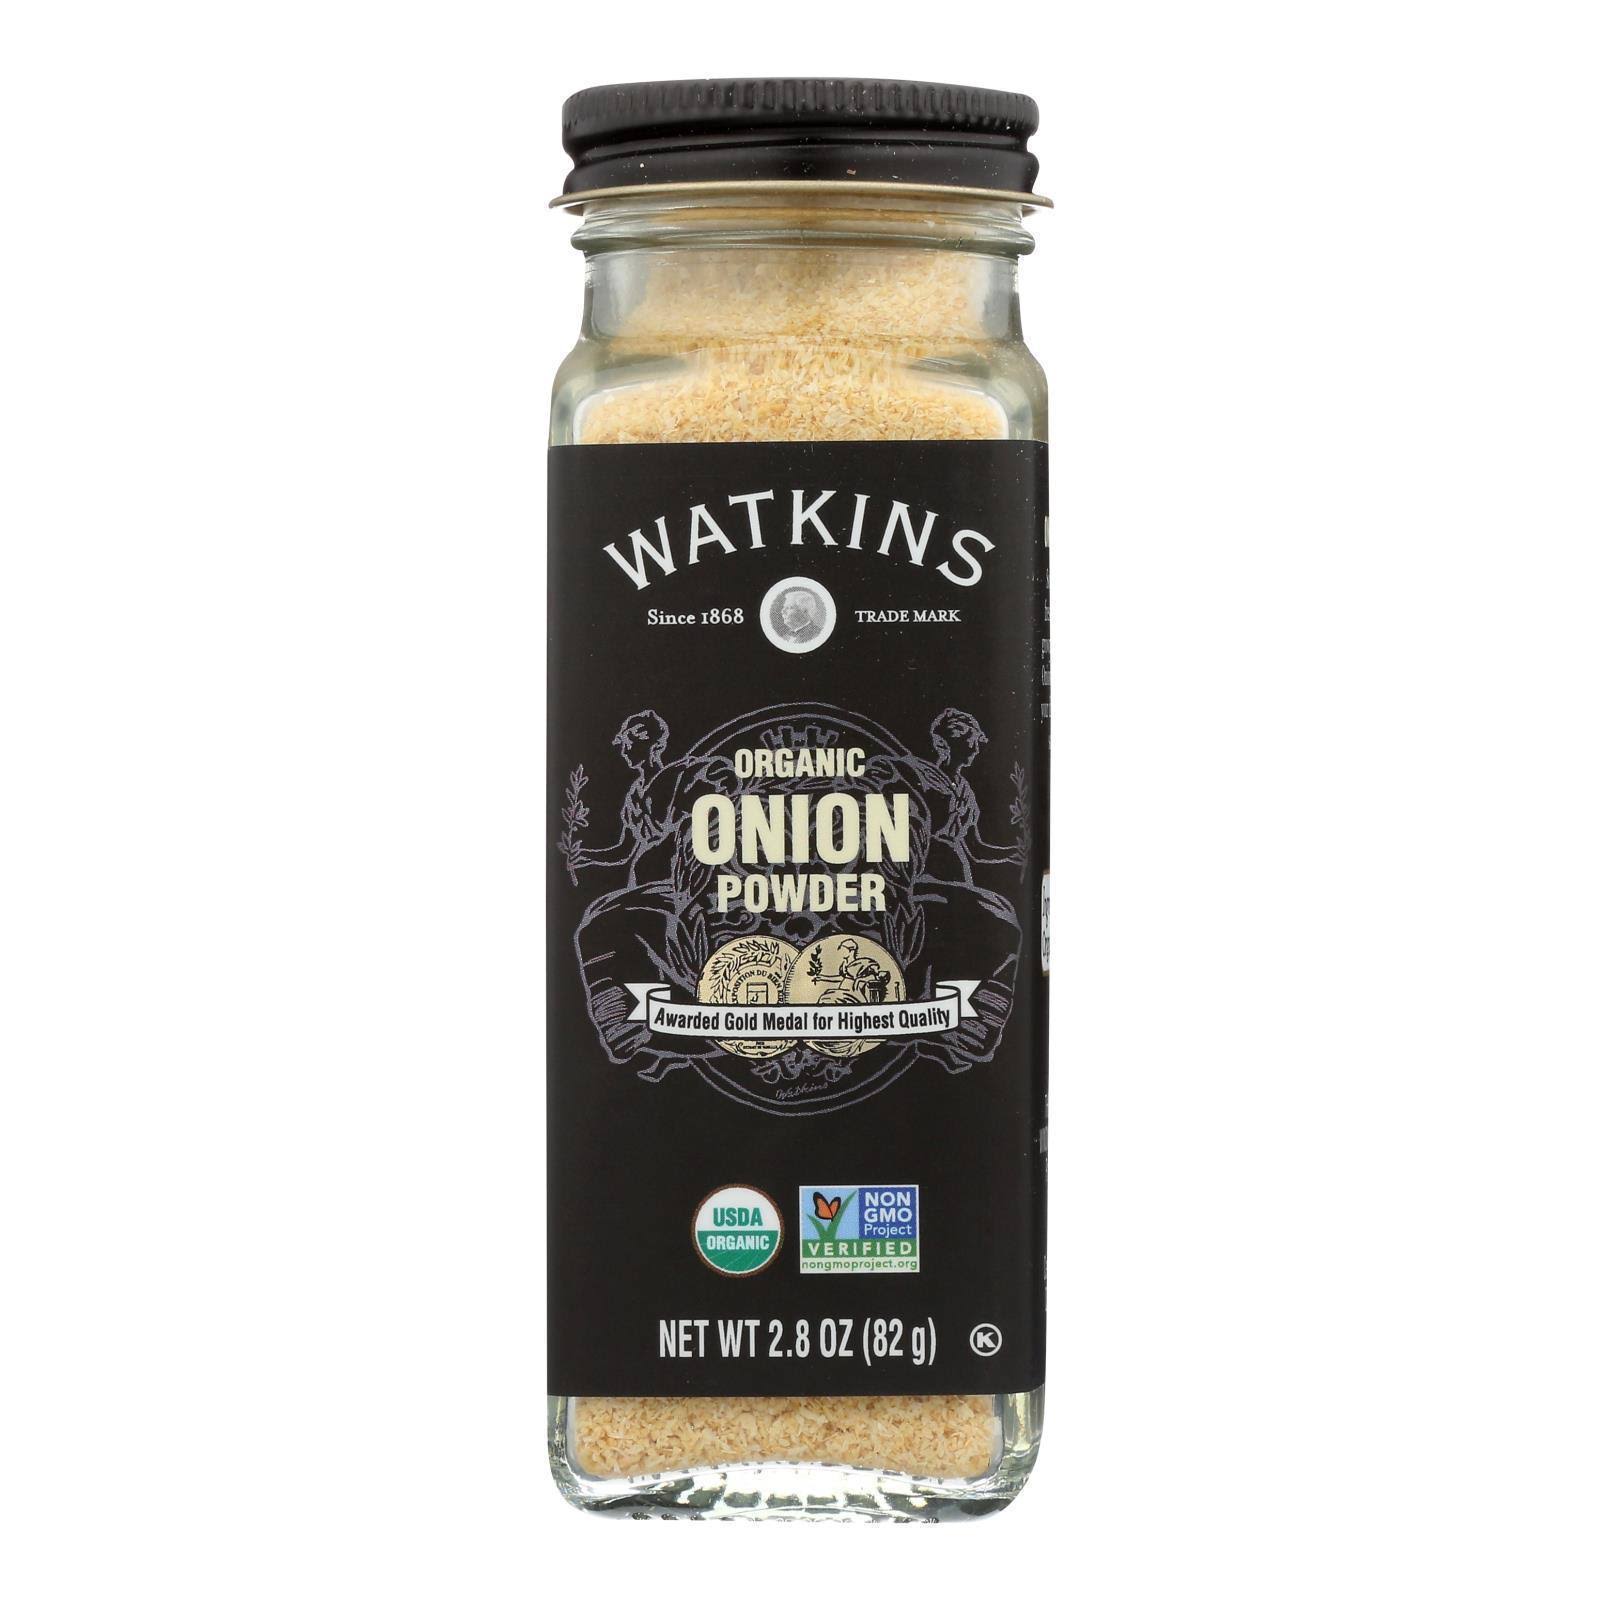 Watkins - Onion Powder - 2.8 Oz